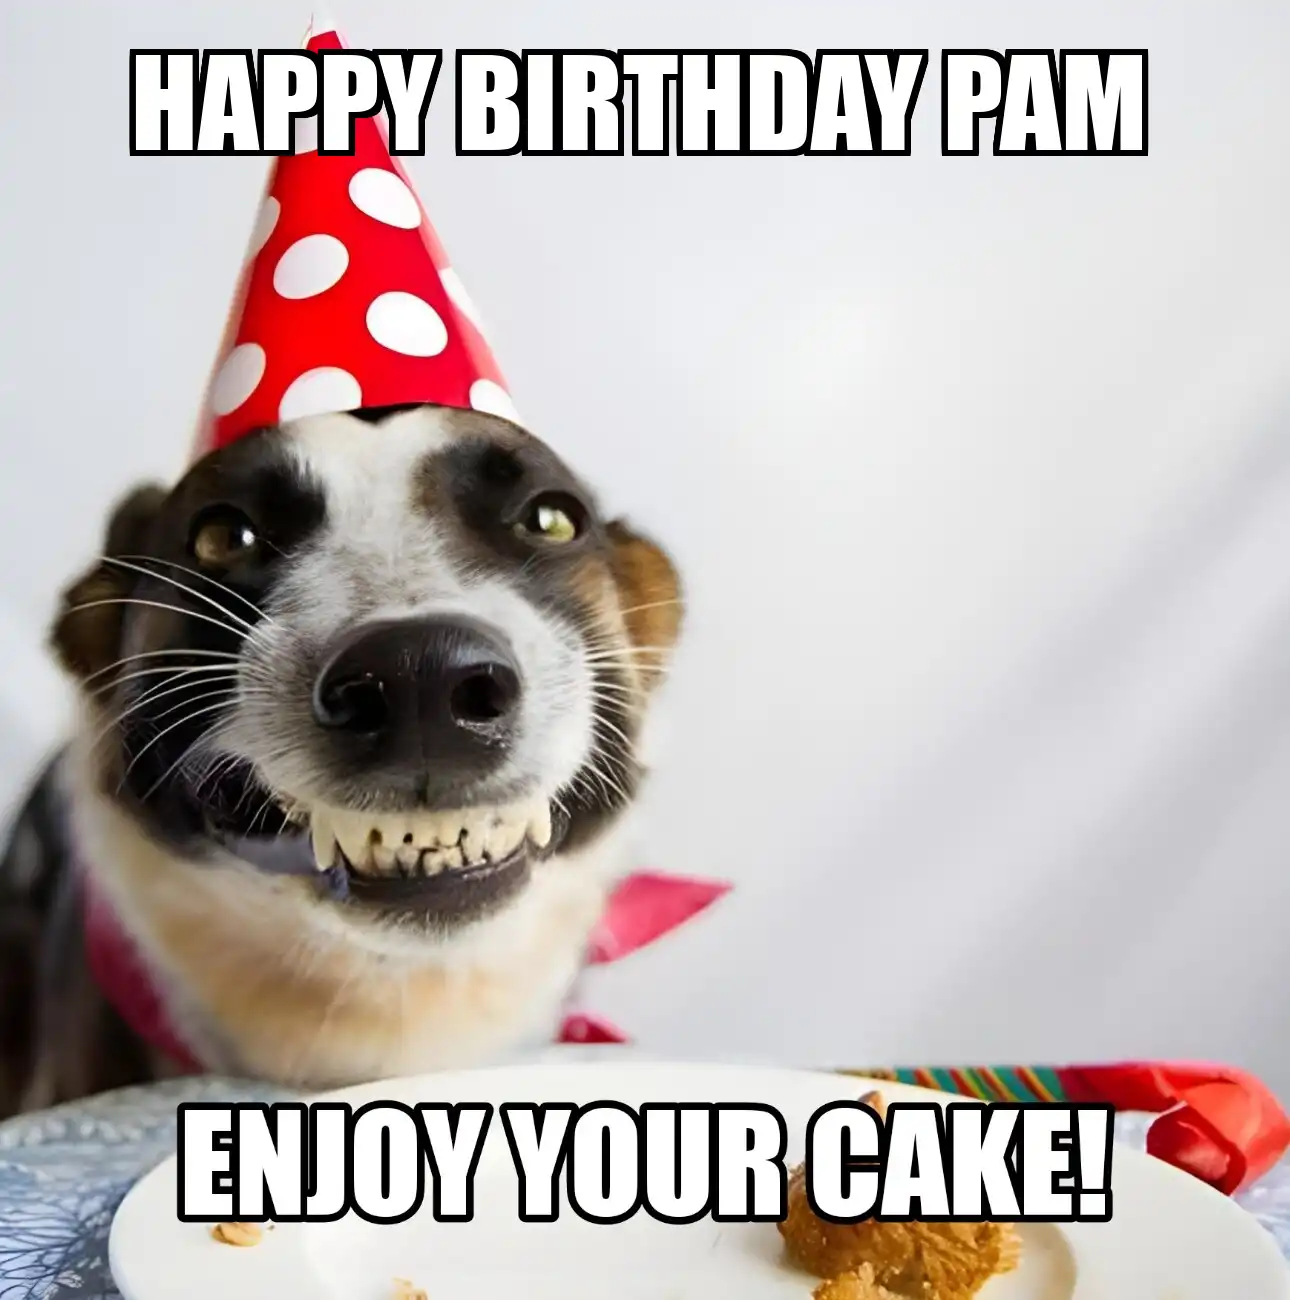 Happy Birthday Pam Enjoy Your Cake Dog Meme